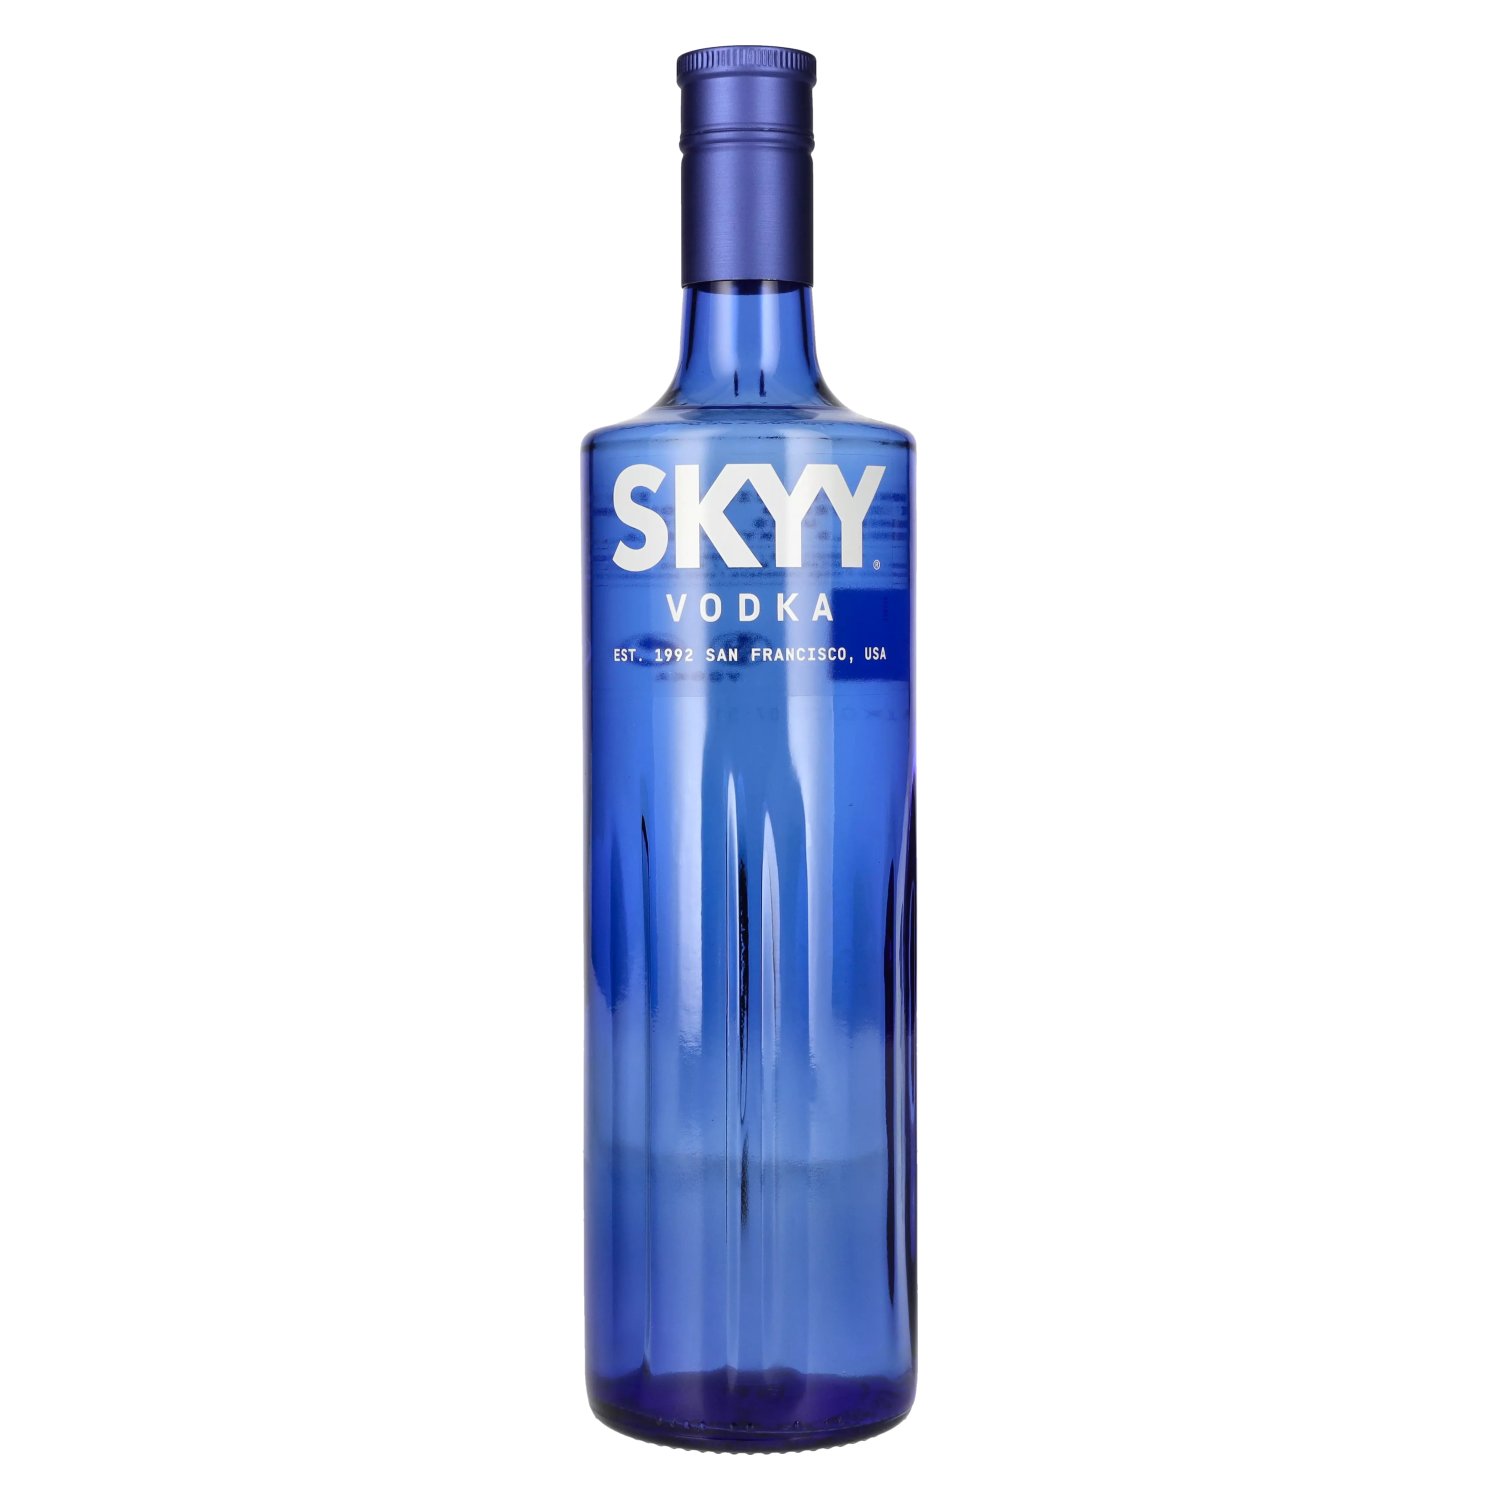 Skyy - delicando 1l 40% Vol. Vodka